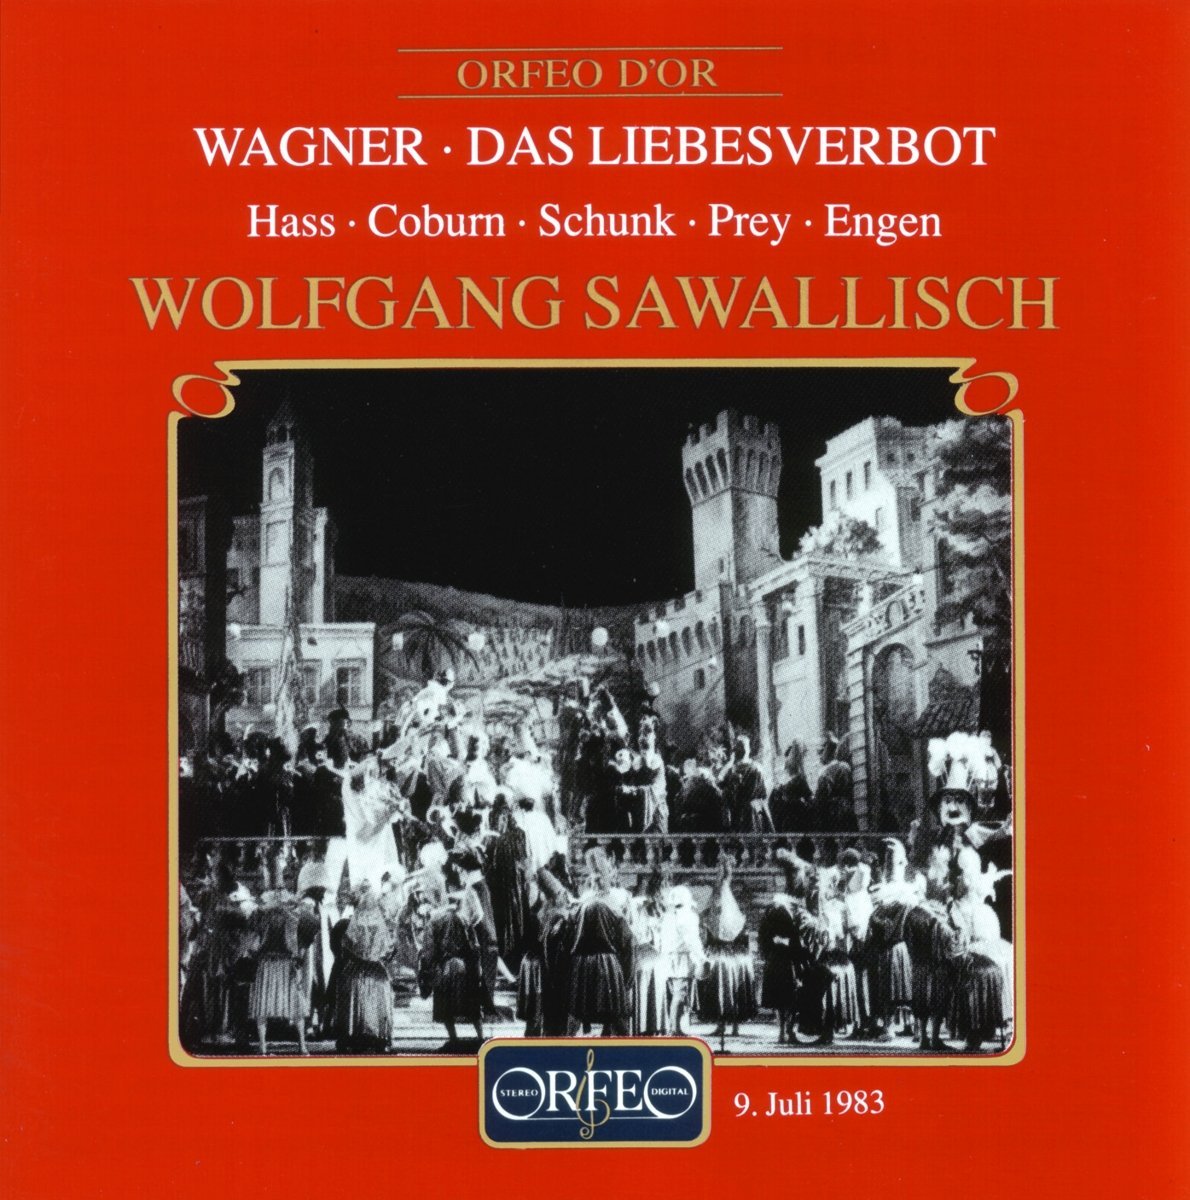 Audio Cd Richard Wagner - Das Liebesverbot NUOVO SIGILLATO, EDIZIONE DEL 07/11/1995 SUBITO DISPONIBILE